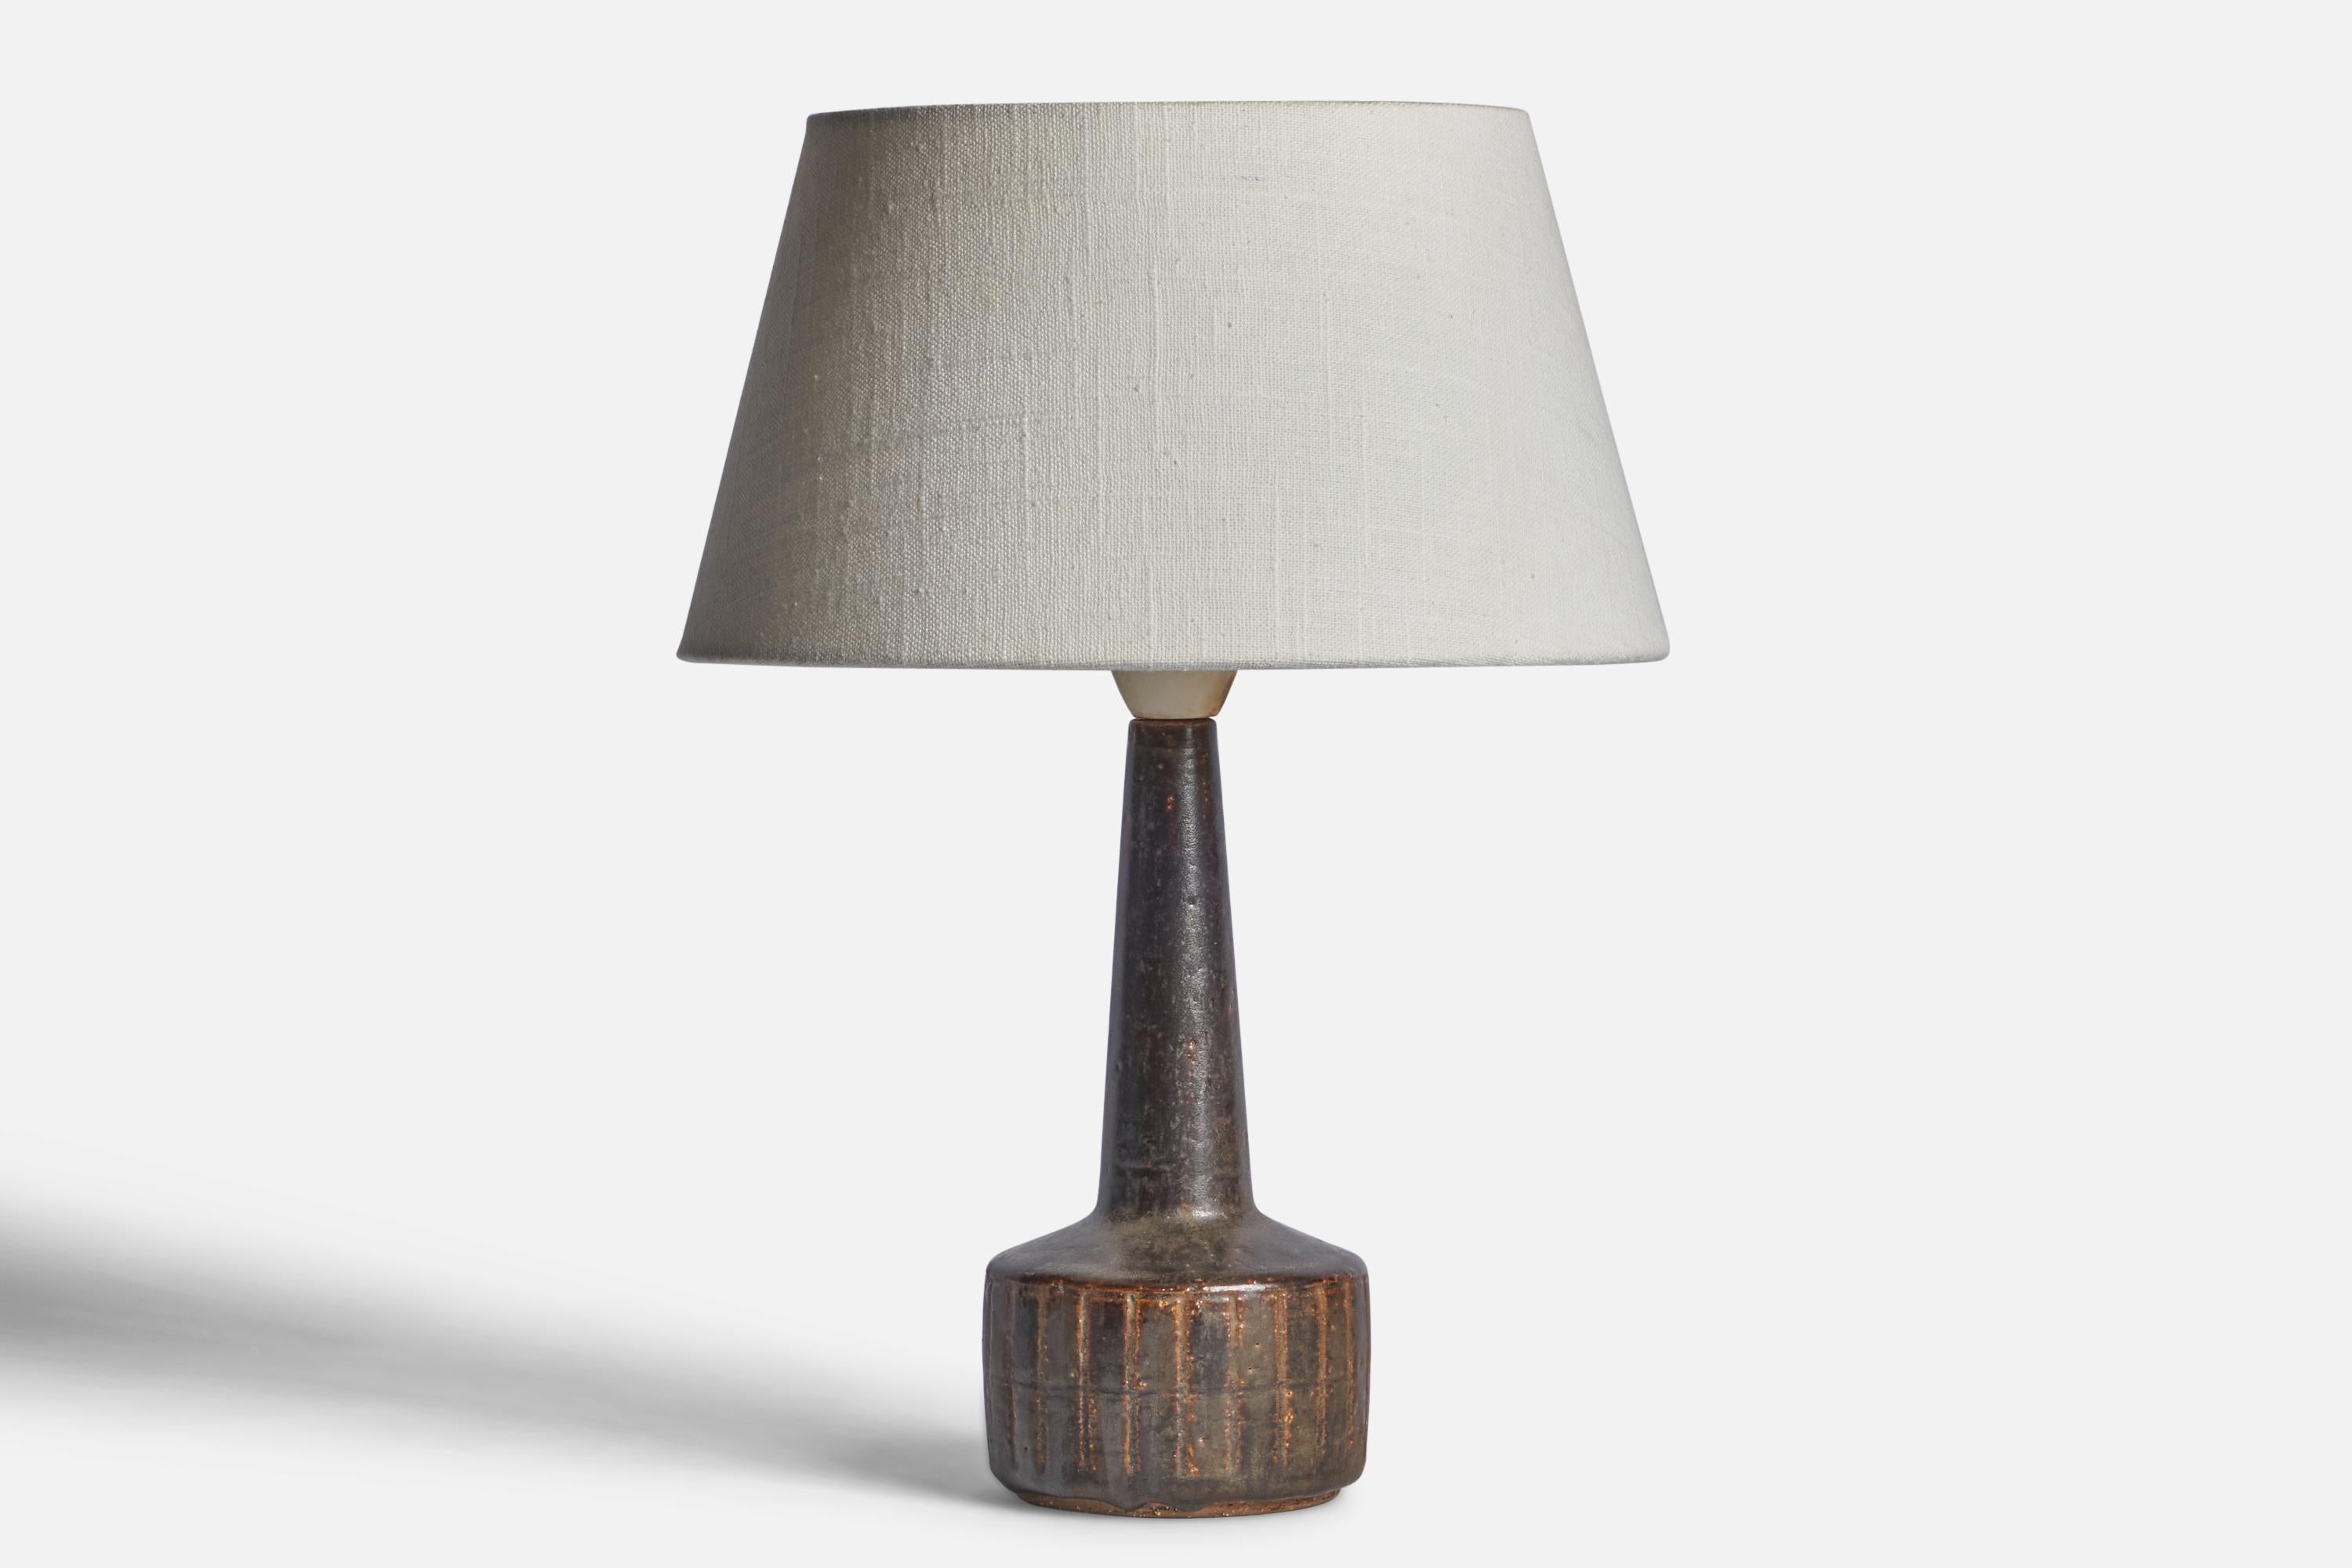 Lampe de table en grès émaillé brun, conçue par Per & Annelise Linneman-Schmidt et produite par Palshus, Danemark, années 1960.

Dimensions de la lampe (pouces) : 10.85